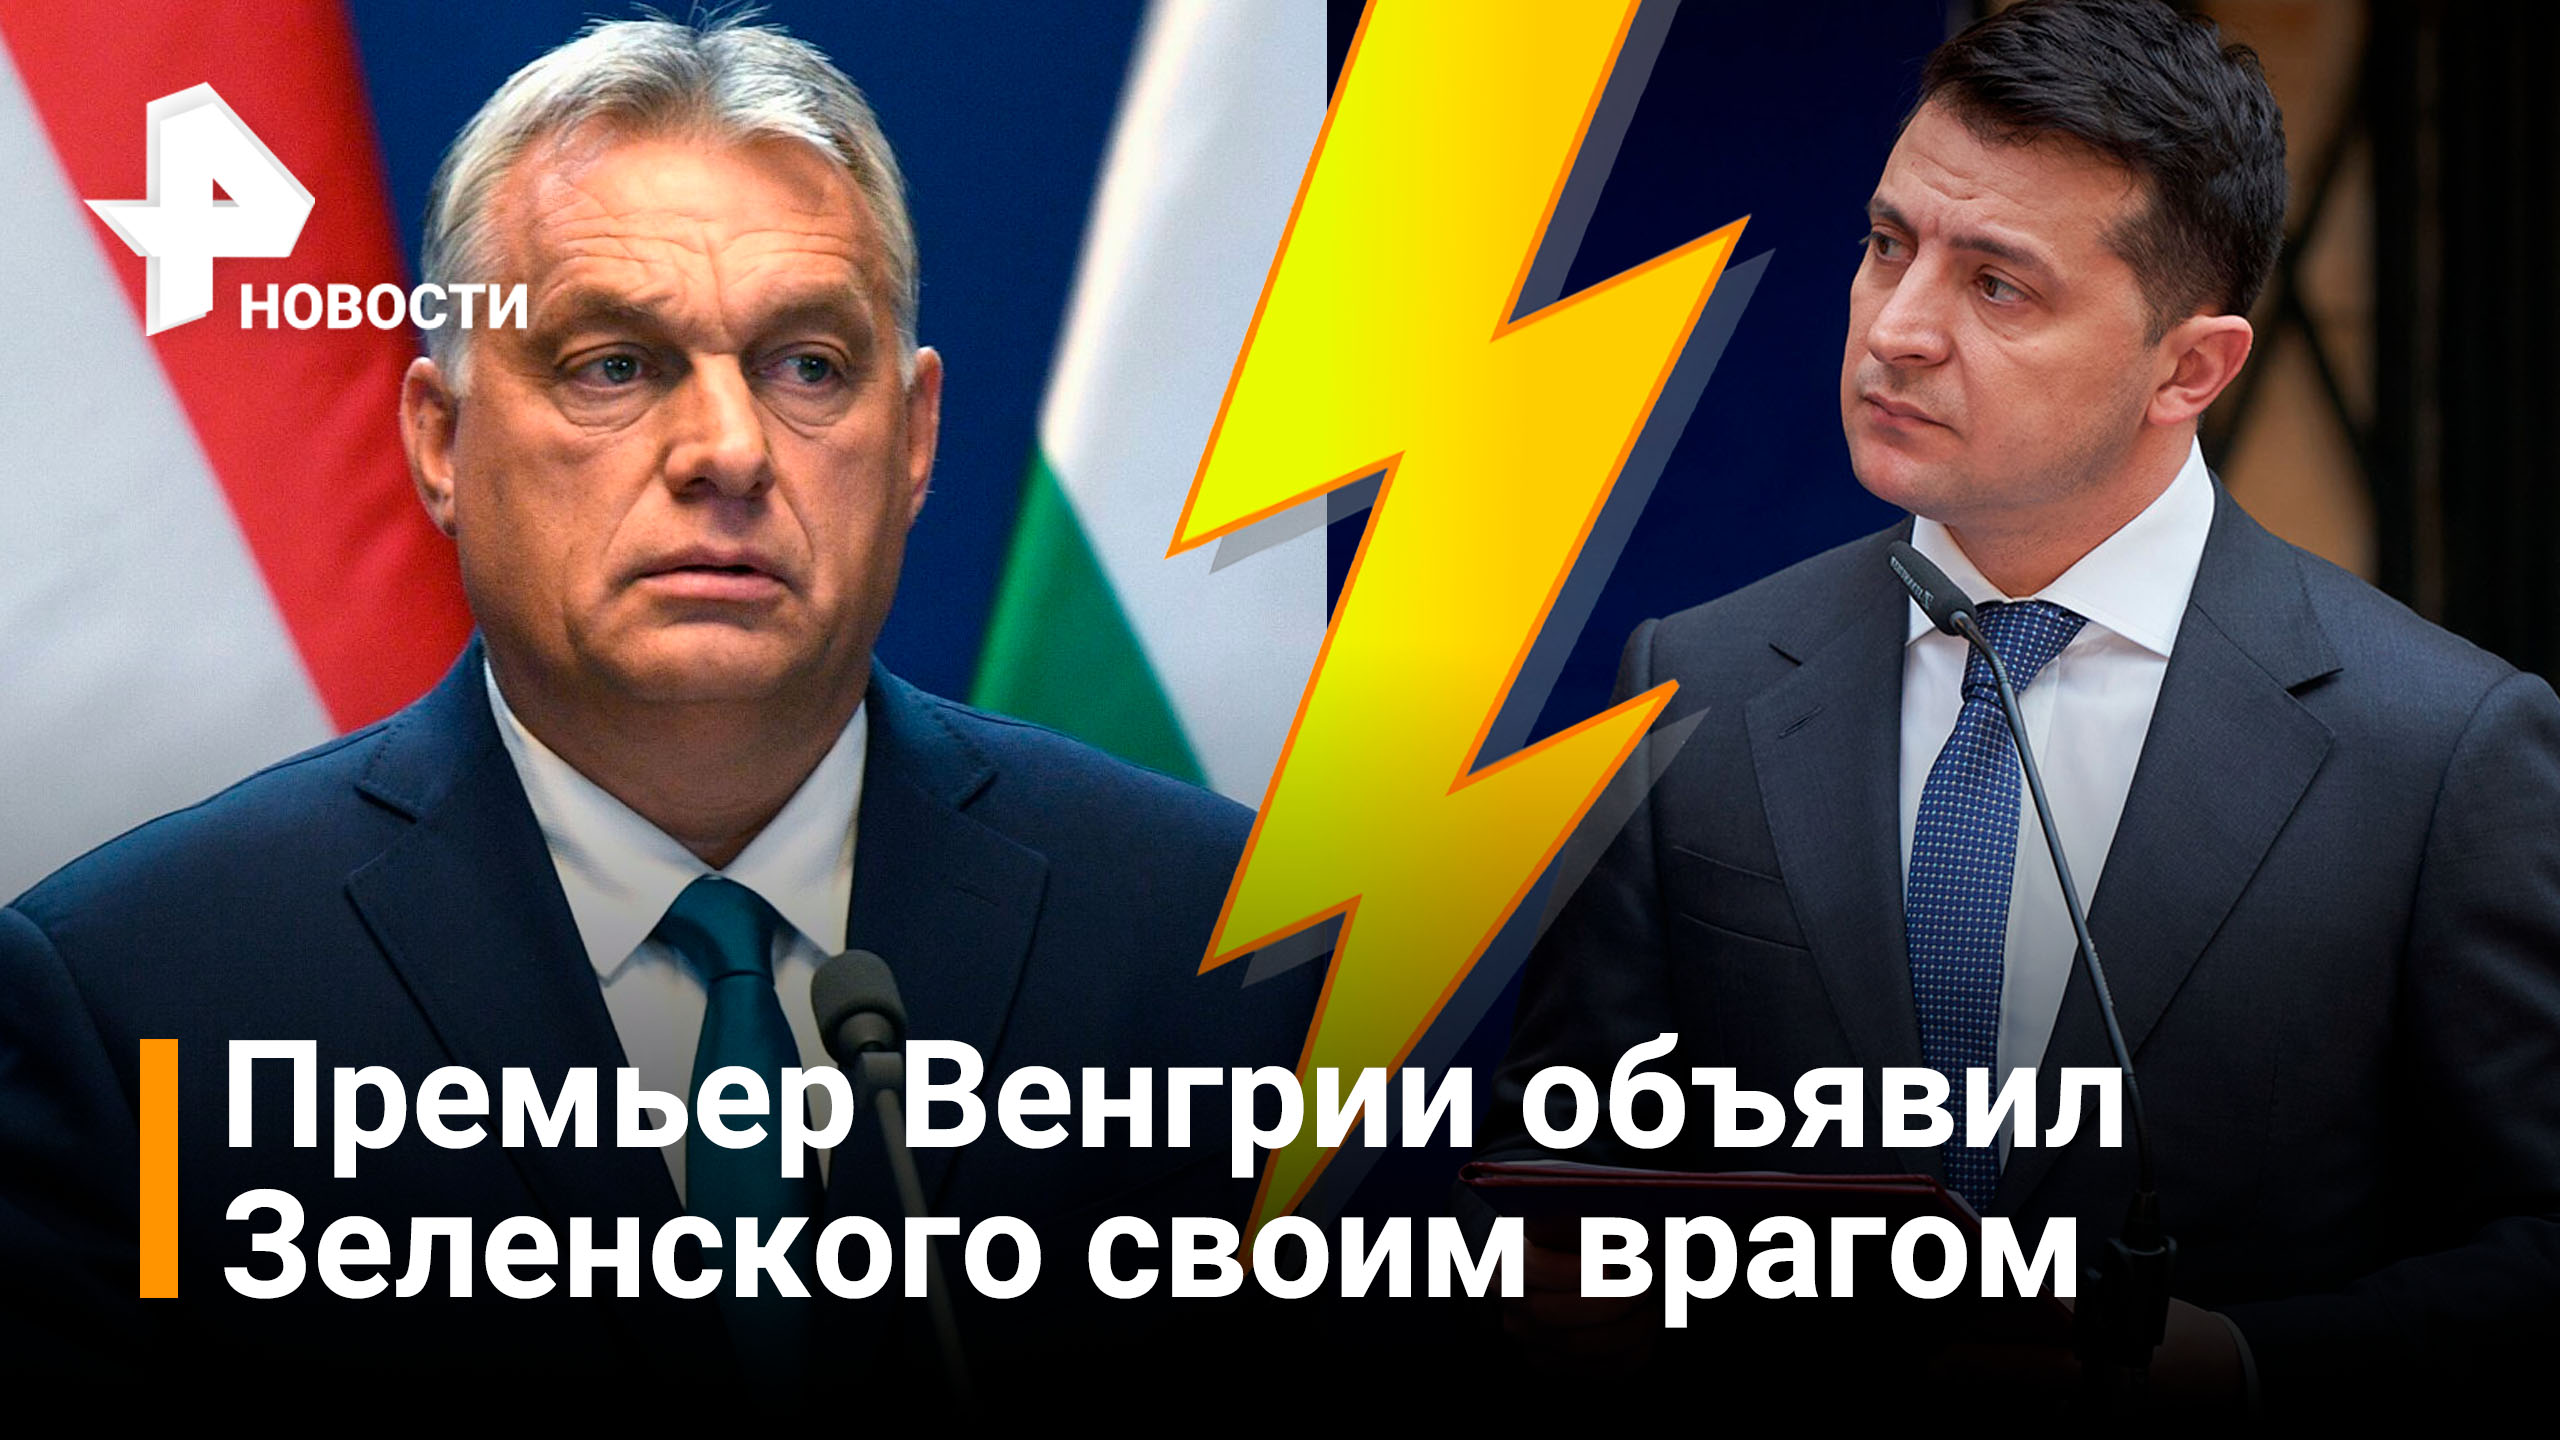 Премьер Венгрии Орбан внес Зеленского в список своих противников / РЕН Новости